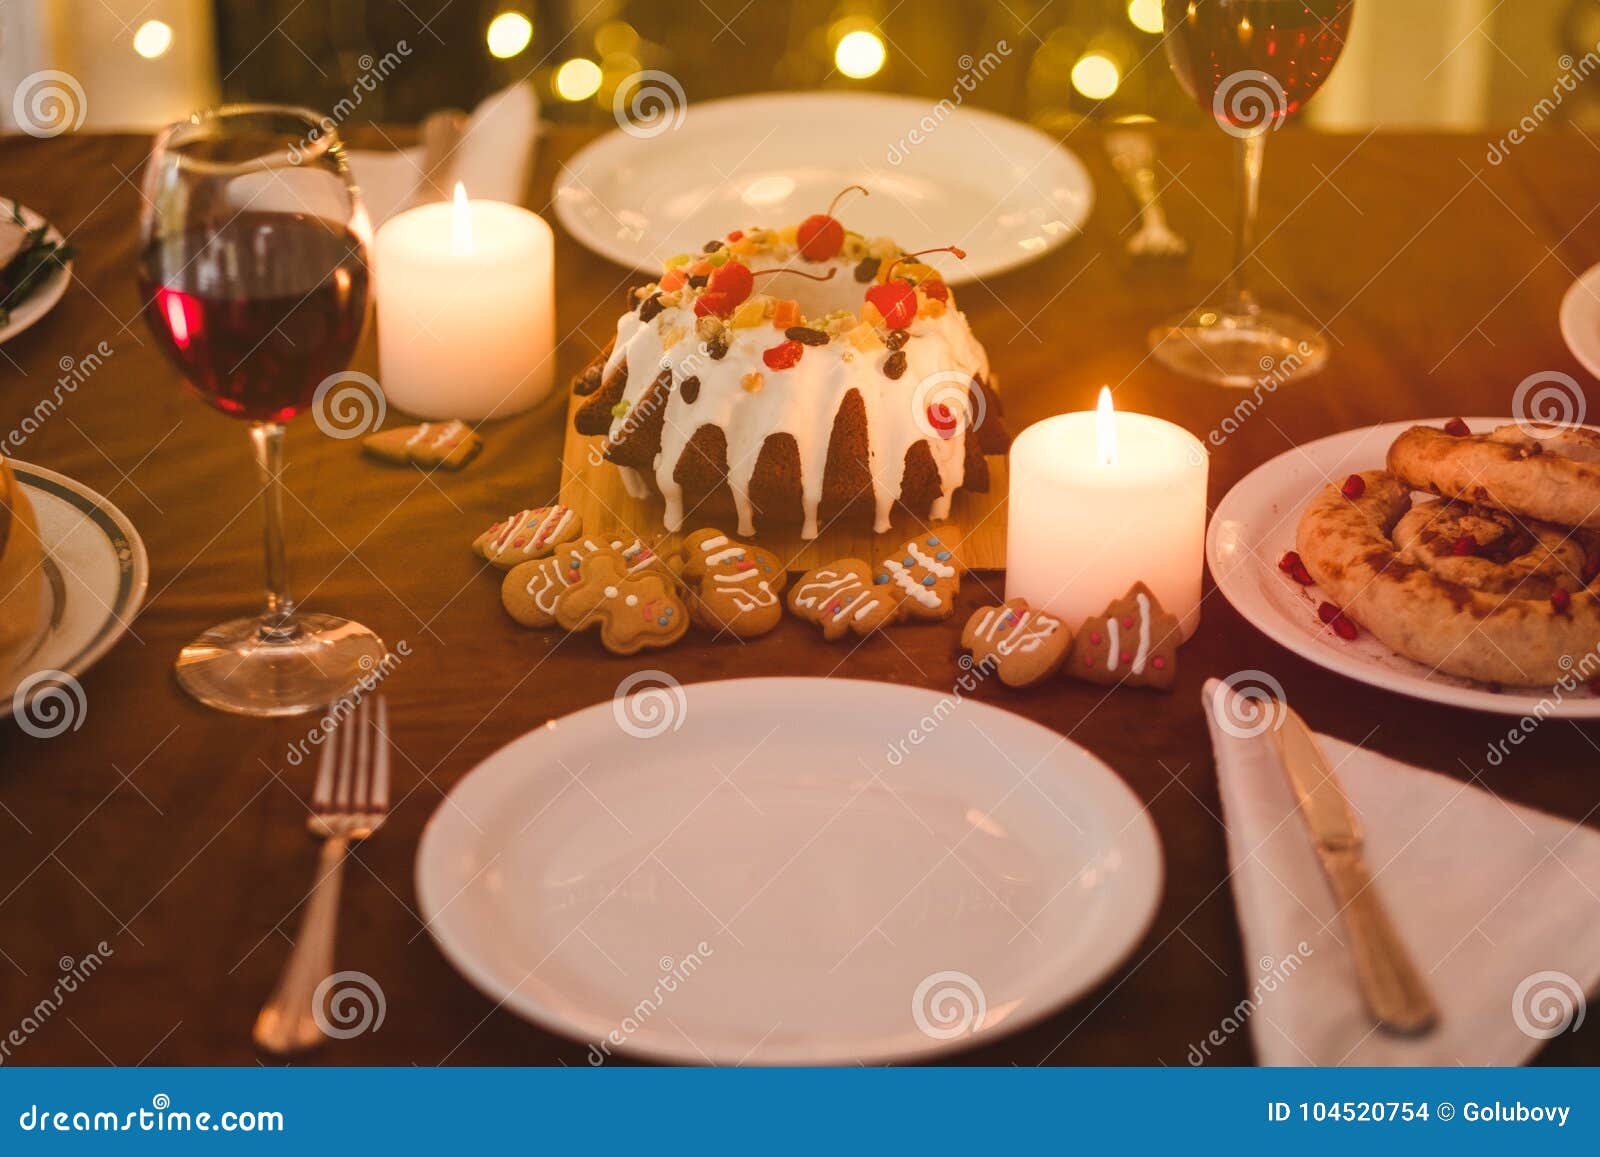 Christmas Eve Festive Family Dinner Stock Photo Image Of